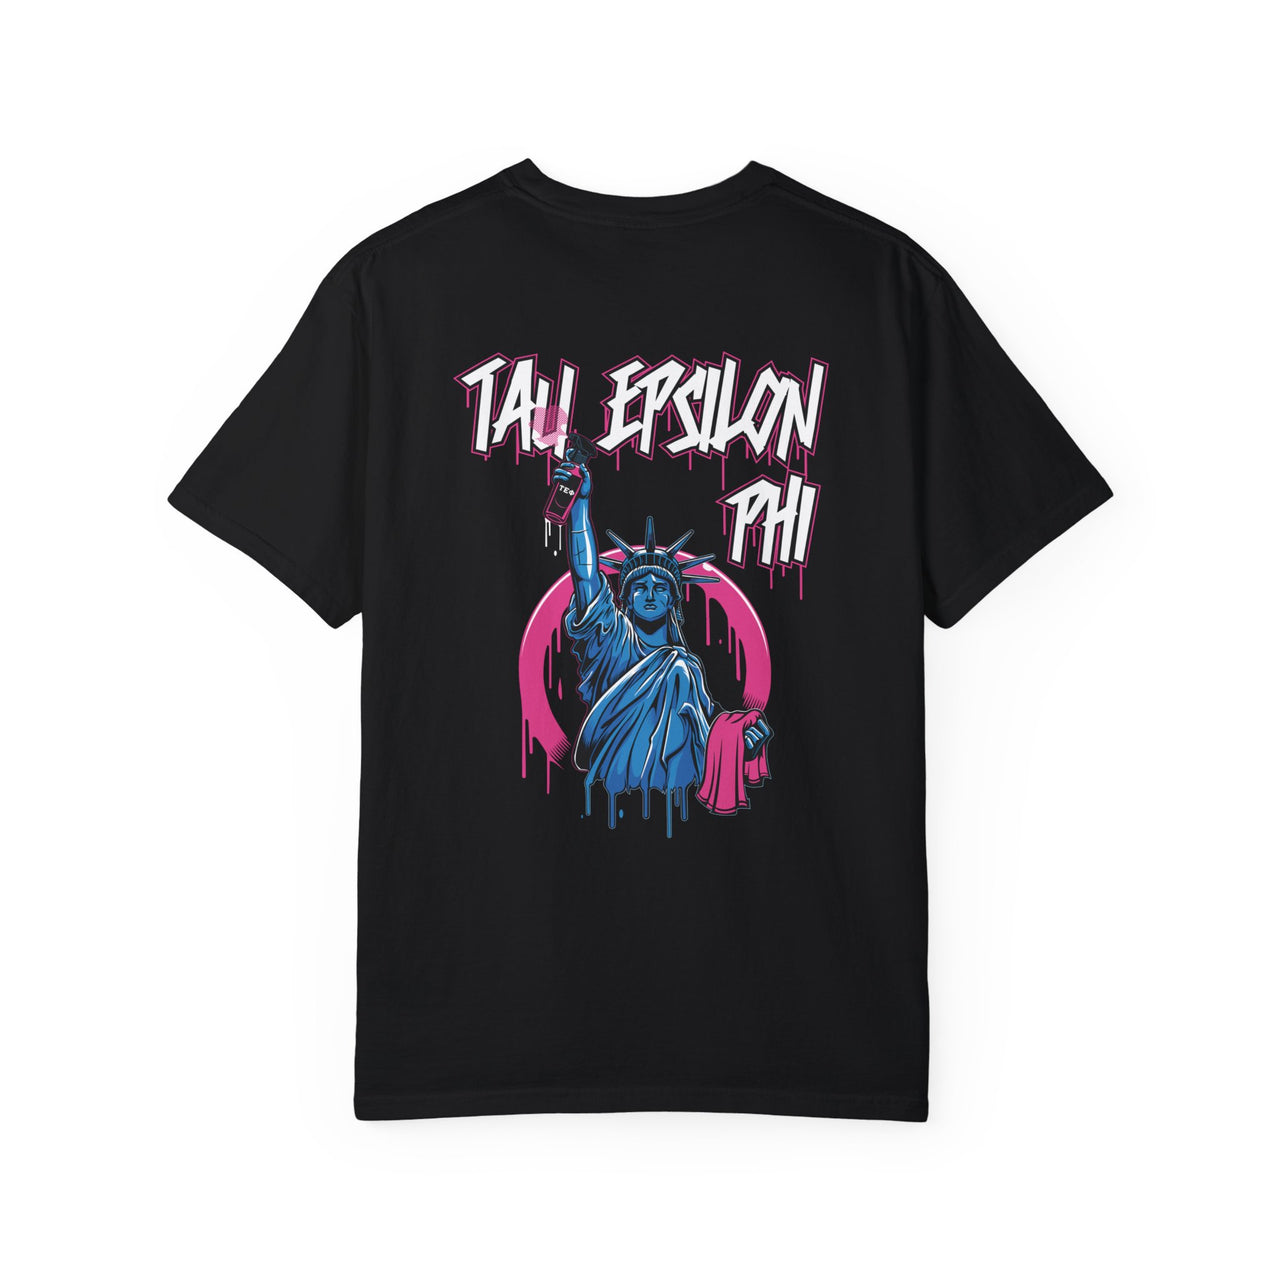 Tau Epsilon Phi Graphic T-Shirt | Liberty Rebel